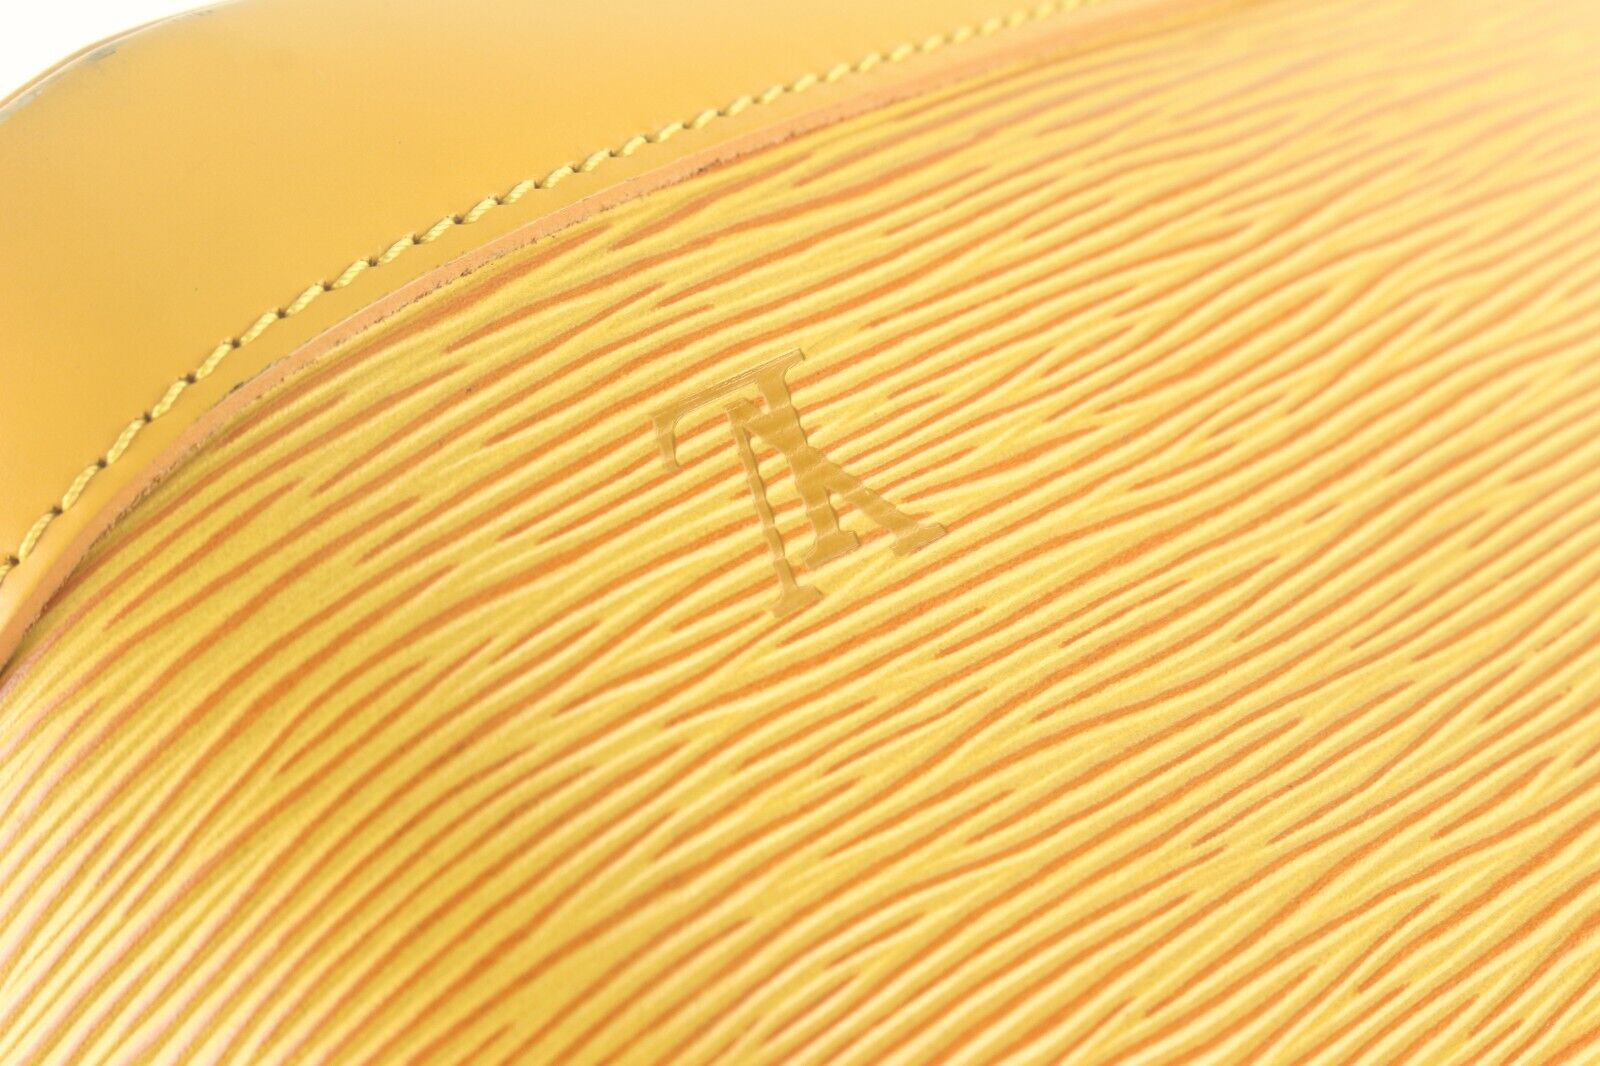 Louis Vuitton Yellow Alma PM Epi Leather 8LV926K